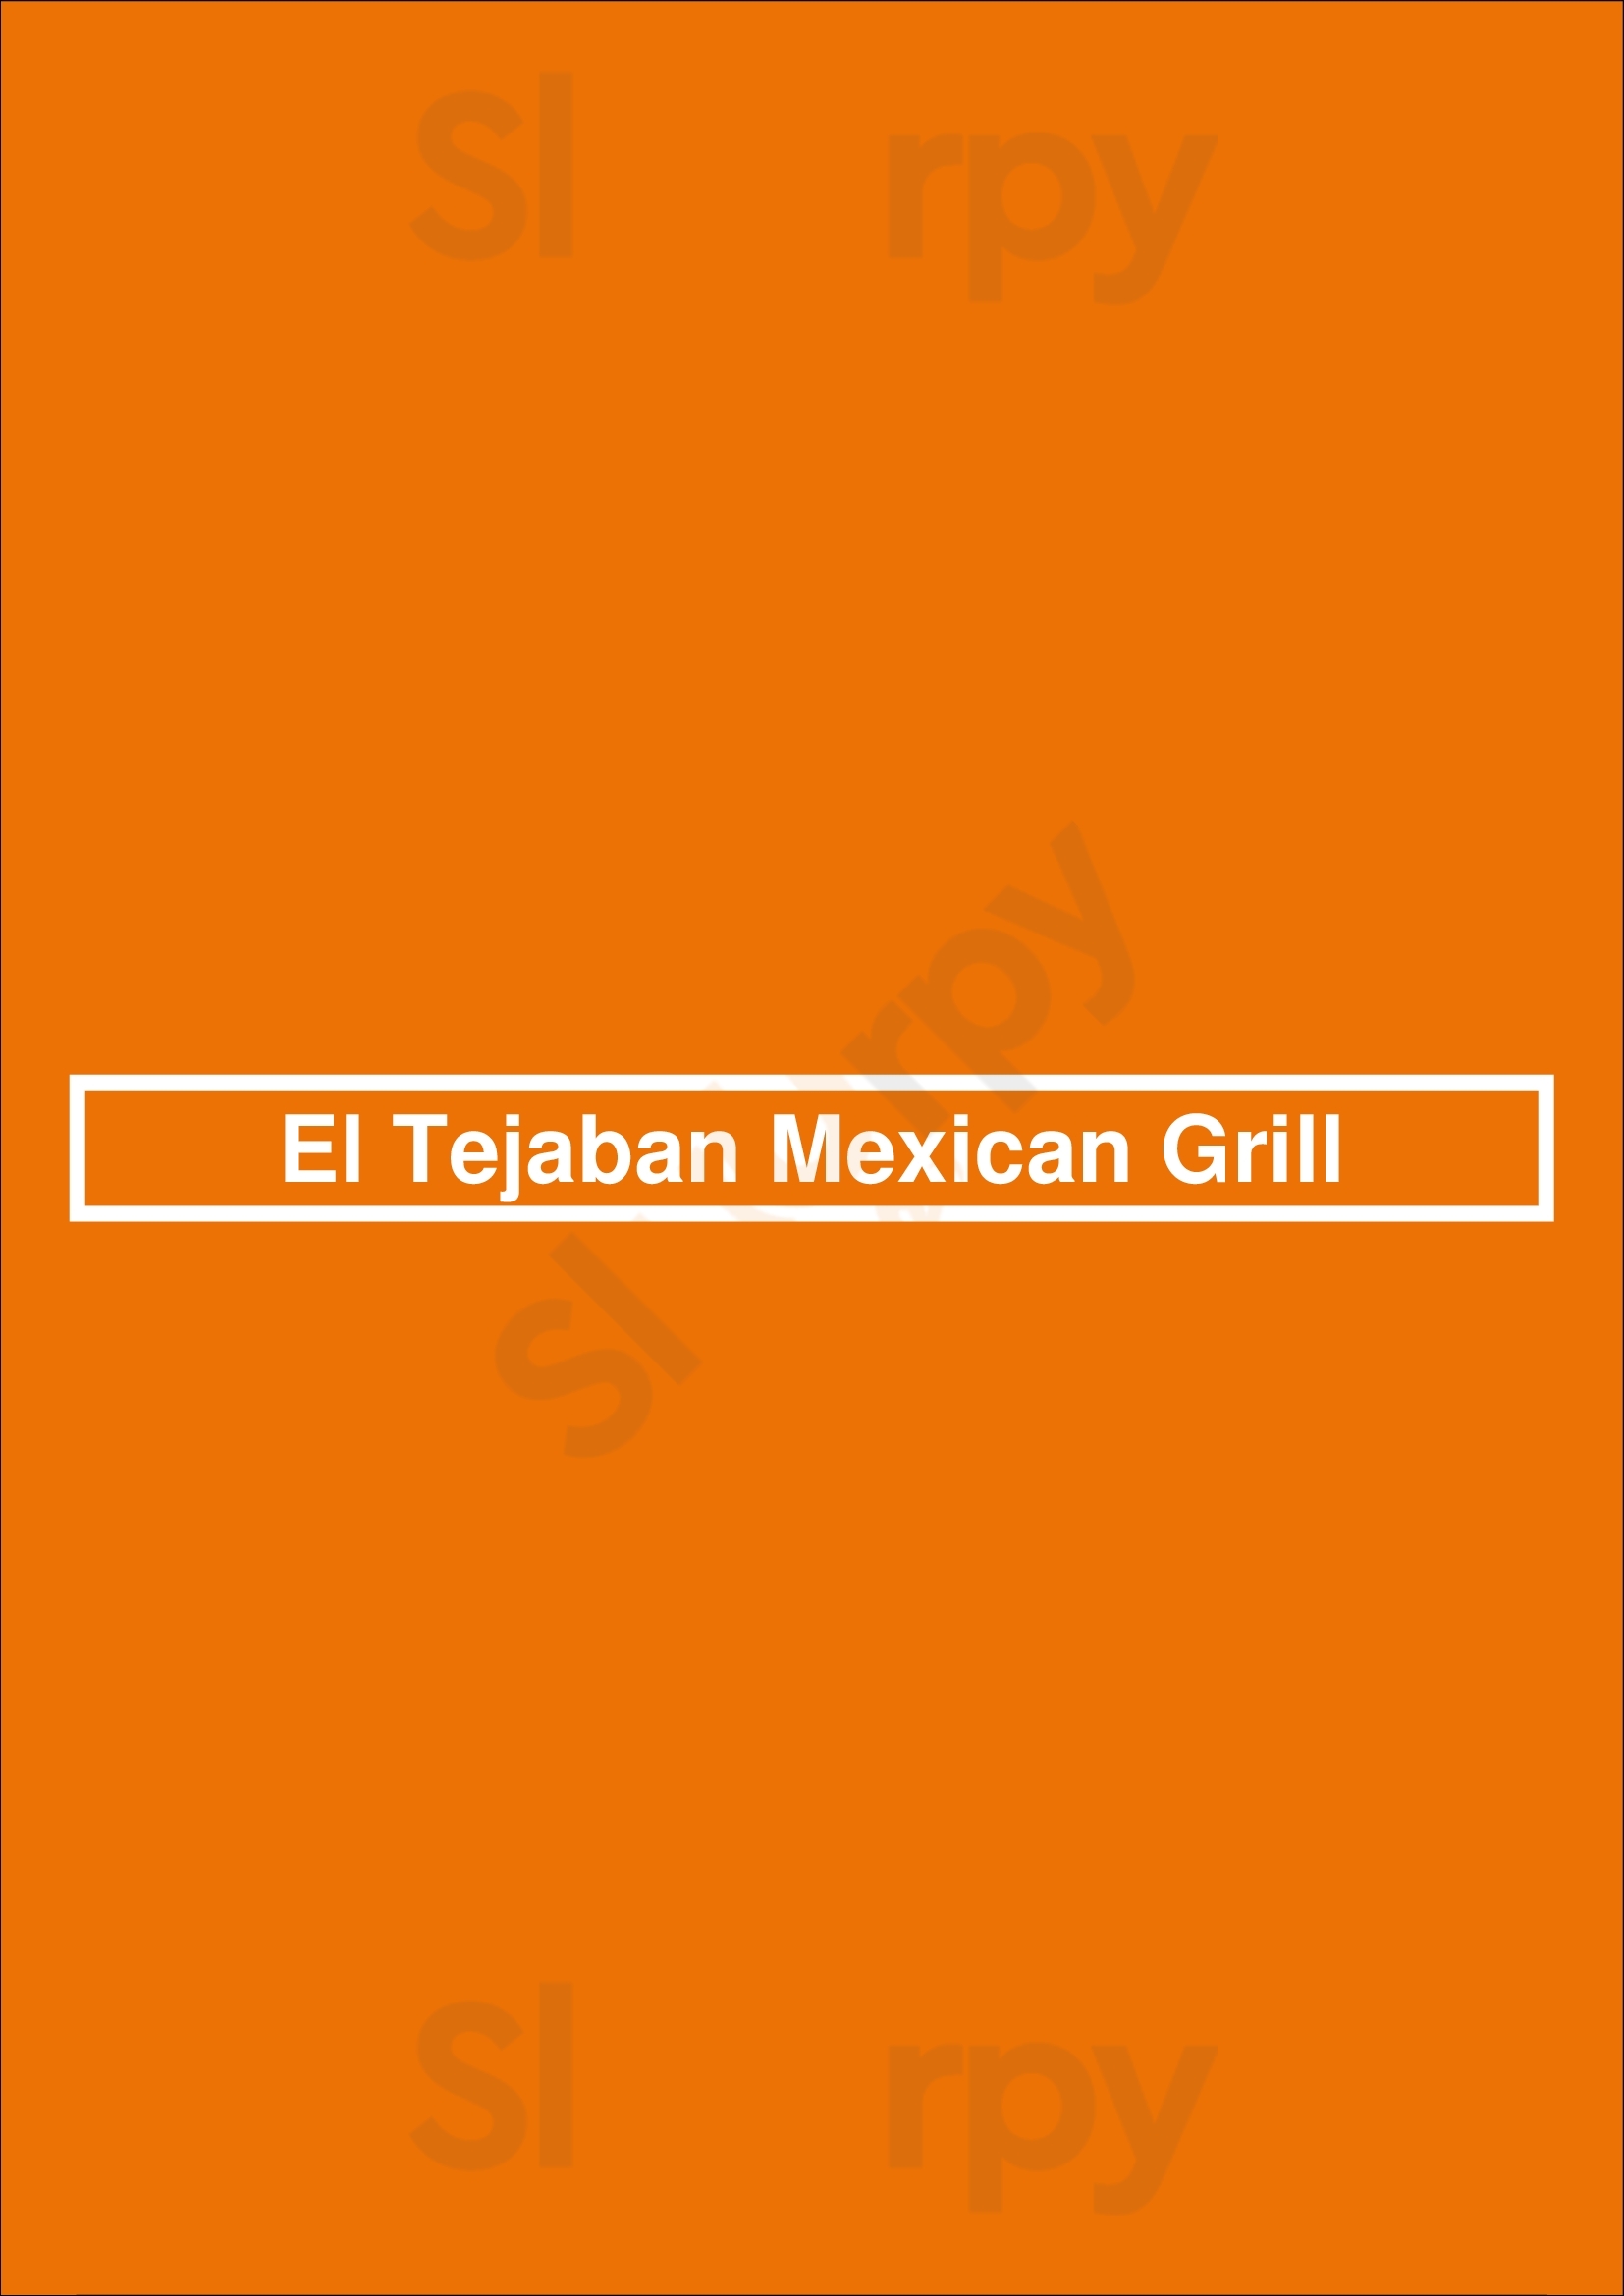 El Tejaban Mexican Grill Richfield Menu - 1